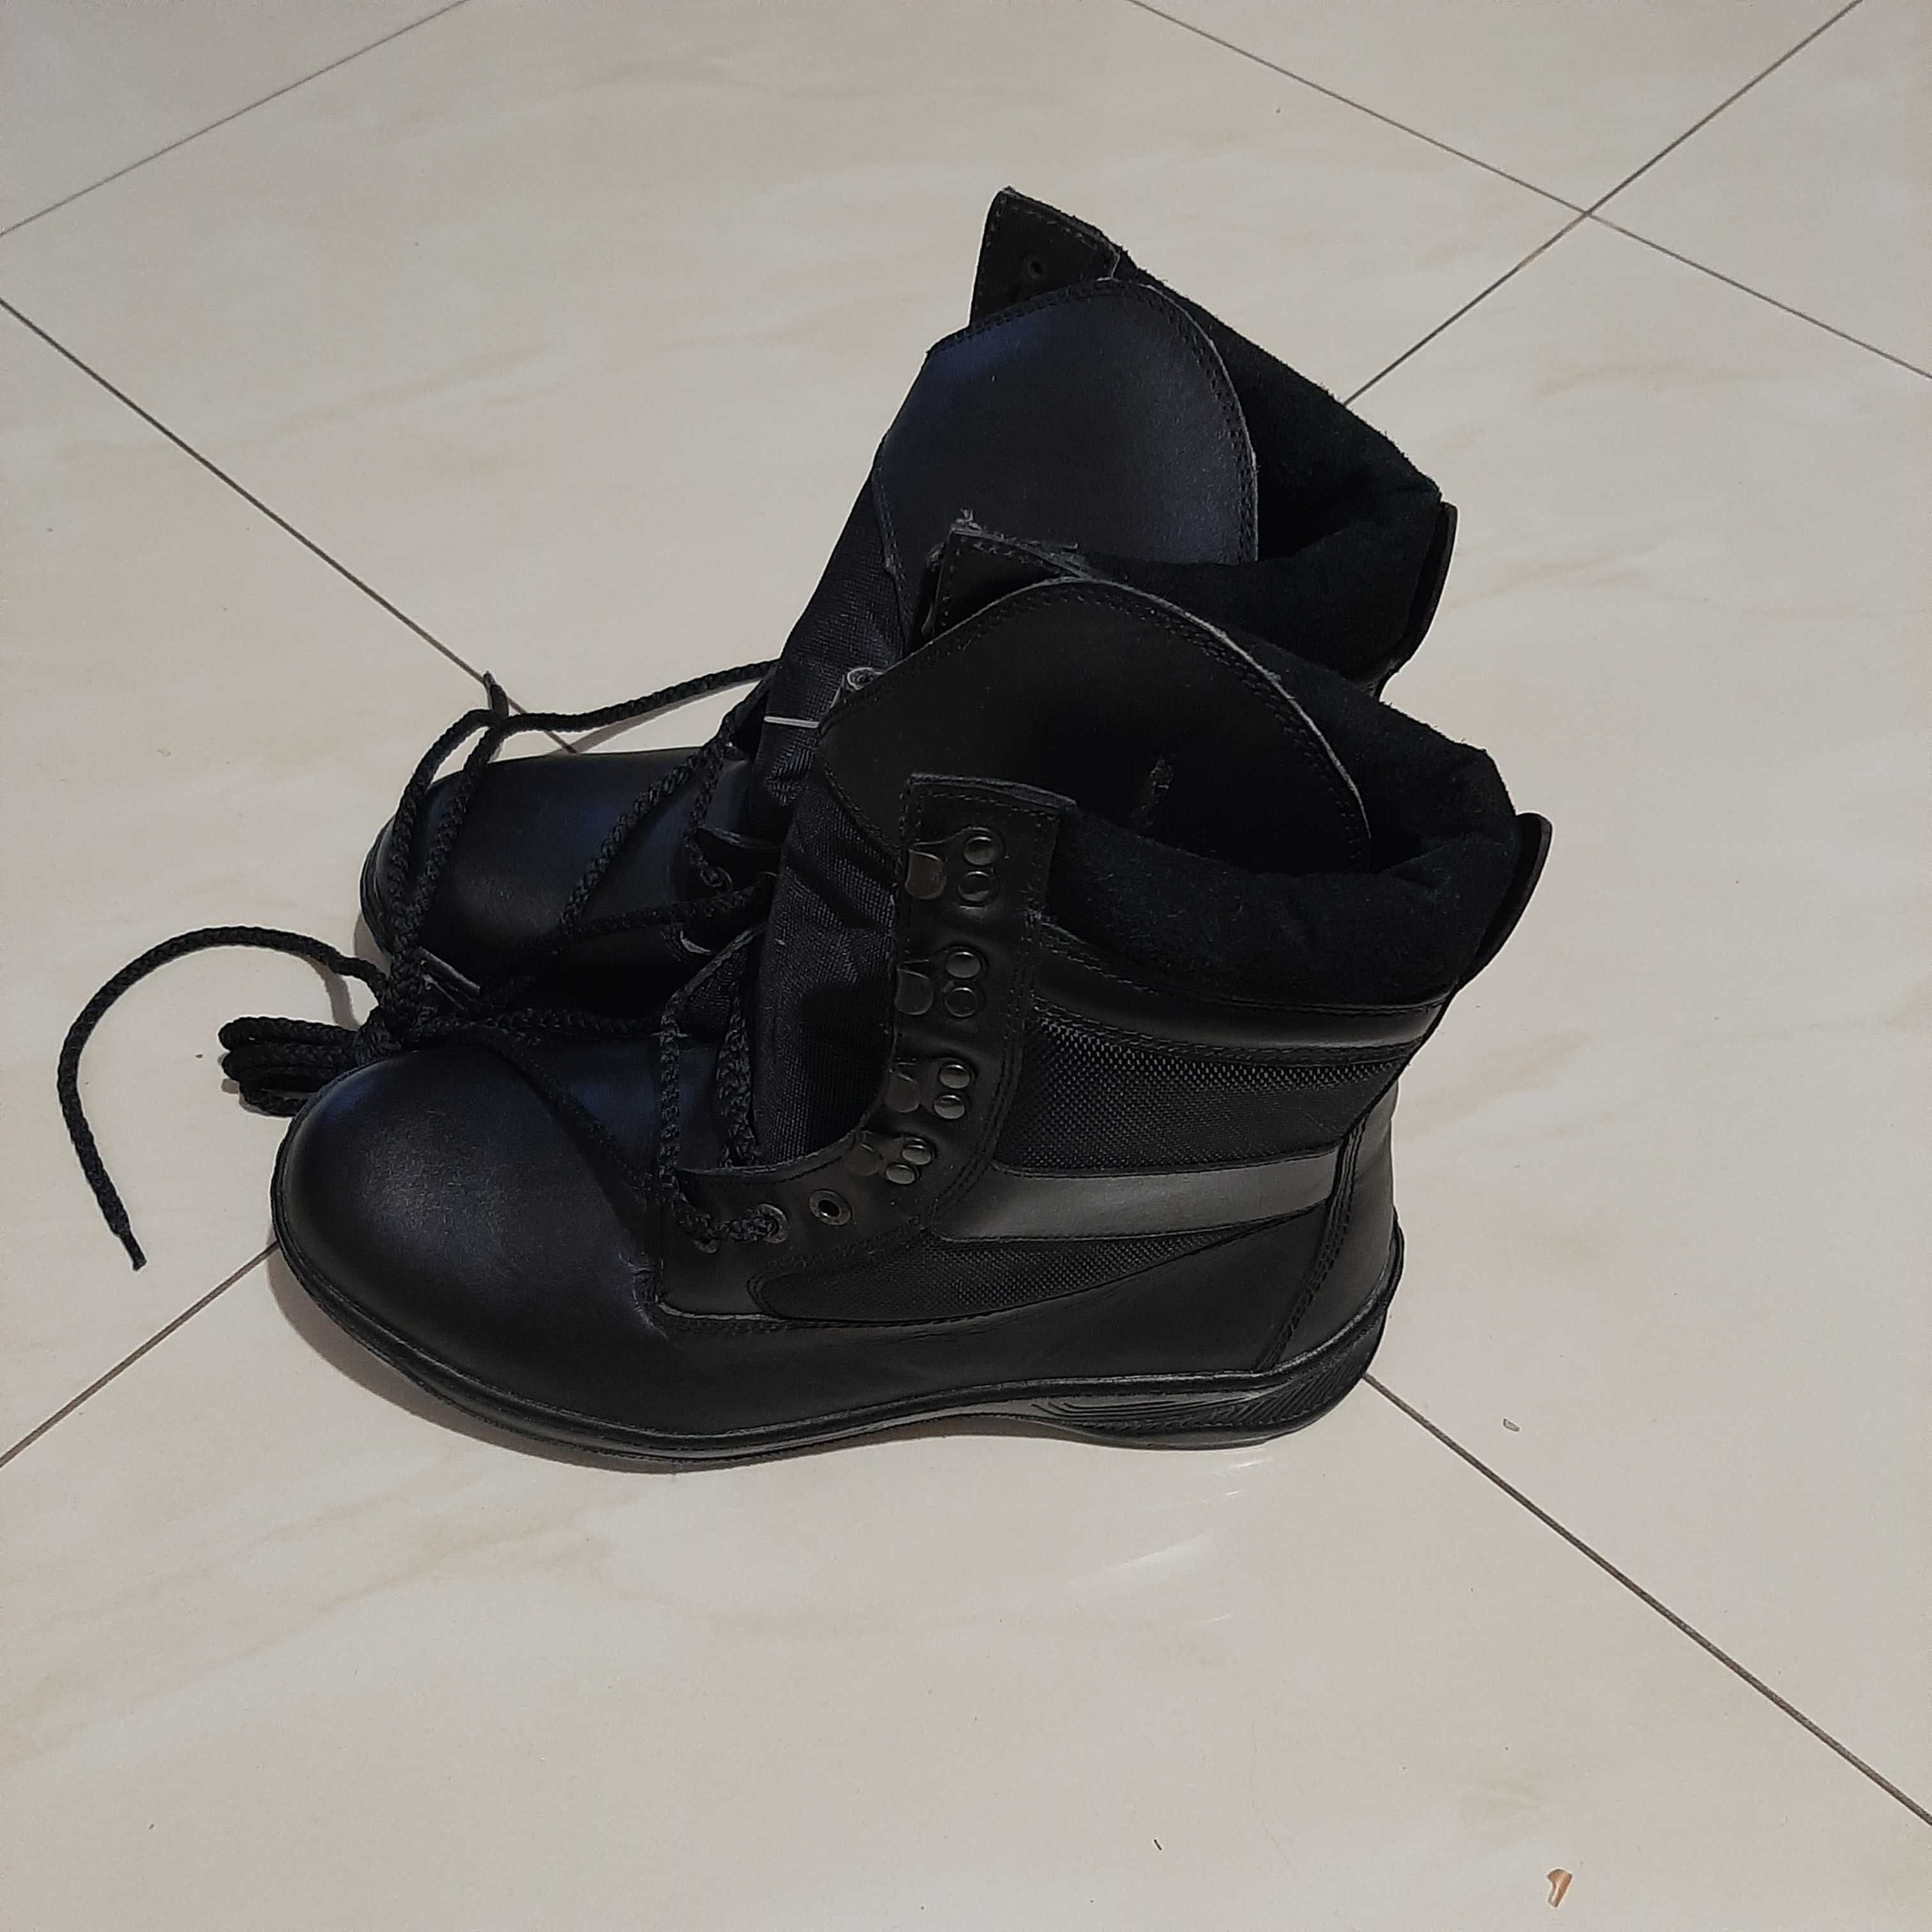 NOWE buty męskie czarne skórzane mundurowe, wojskowe BUT STAR